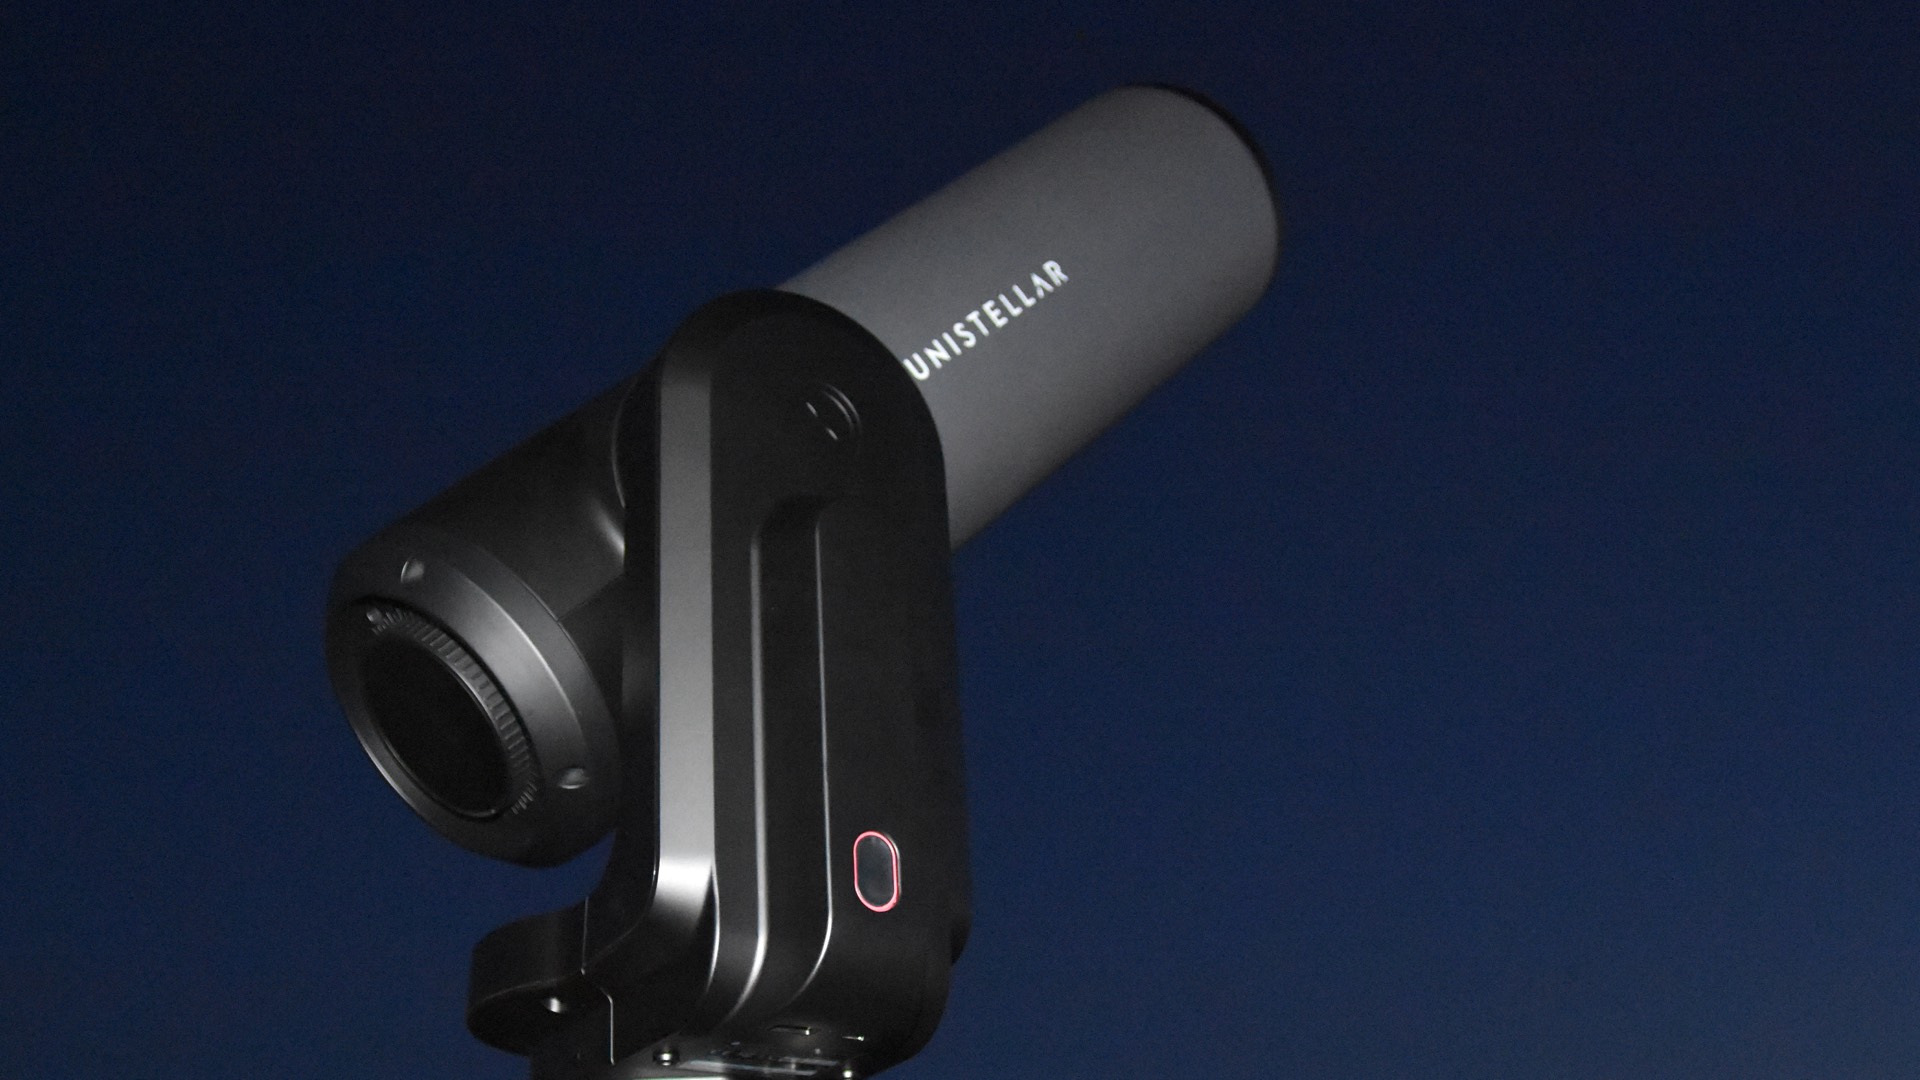 Das Smart-Teleskop Unistellar eQuinox 2 – Geheimtipp für Galaxienjäger